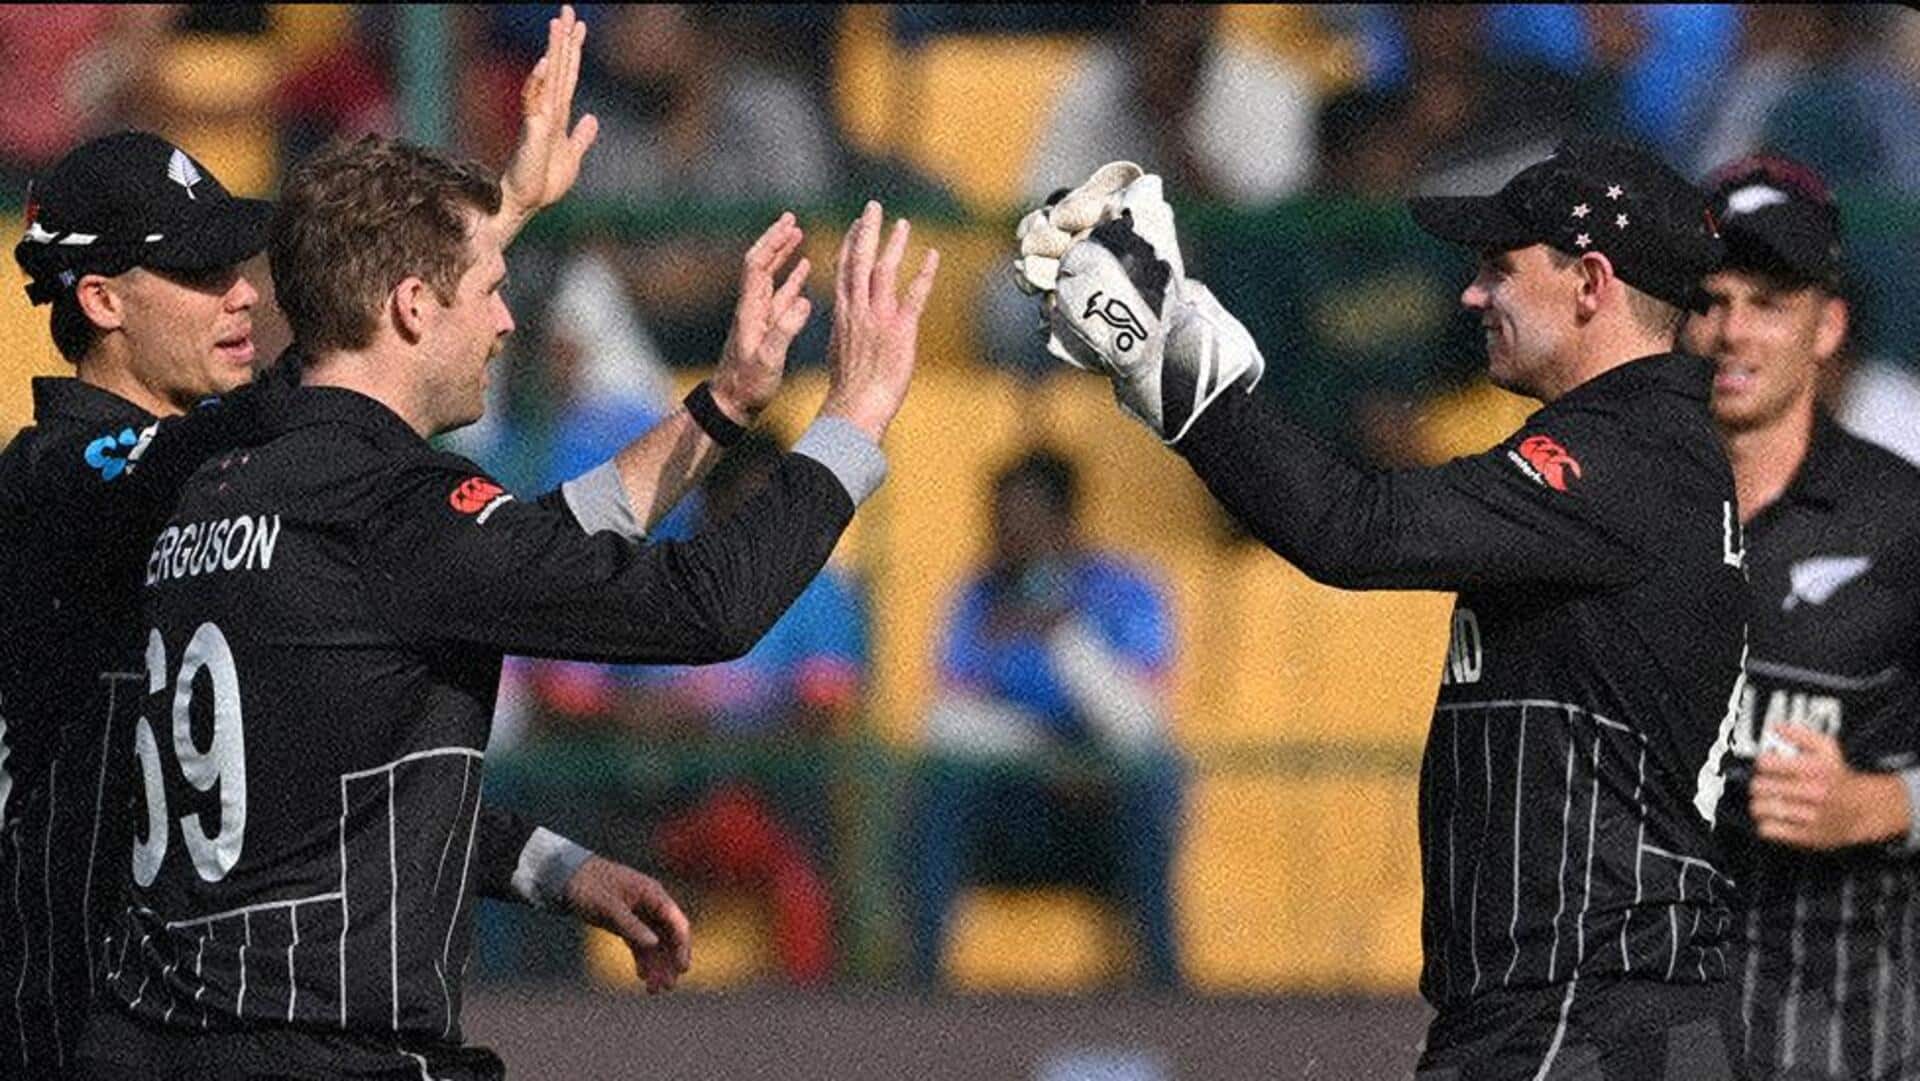 विश्व कप 2023: न्यूजीलैंड ने श्रीलंका को 5 विकेट से हराया, सेमीफाइनल में खेलना लगभग तय 